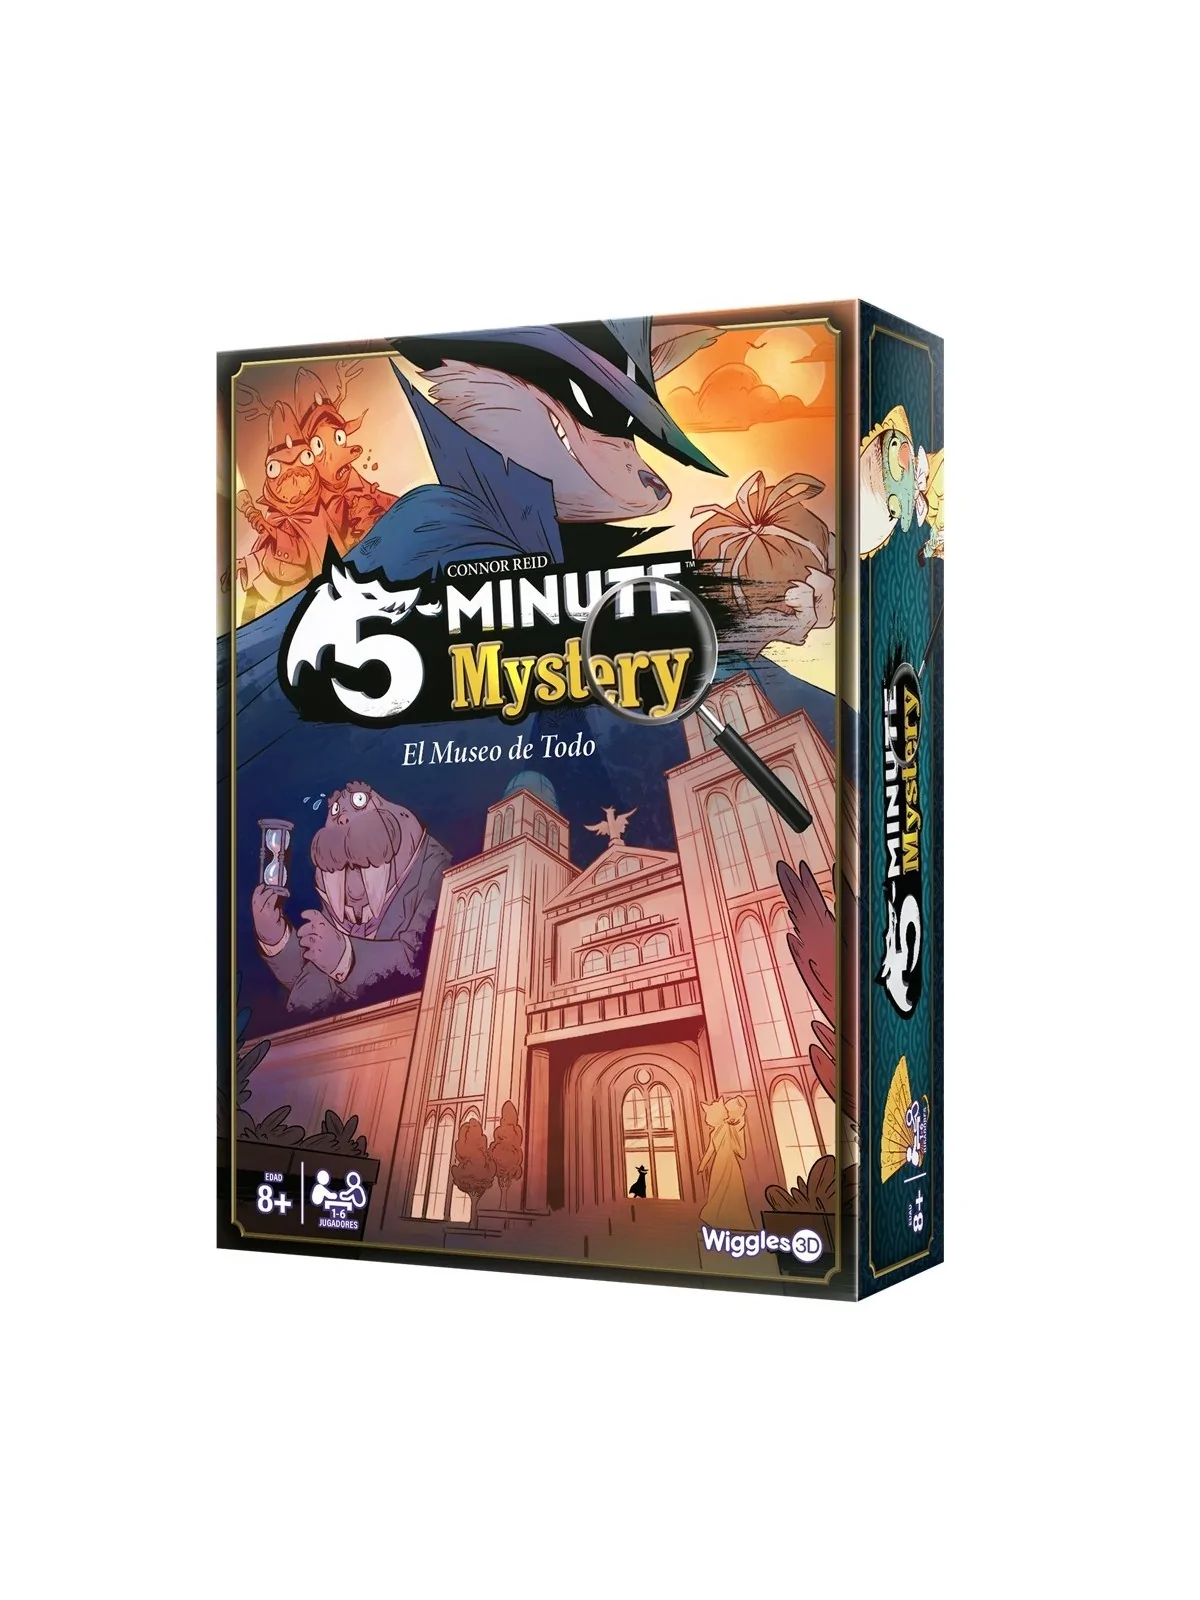 Comprar 5 Minute Mystery barato al mejor precio 25,46 € de Juegos